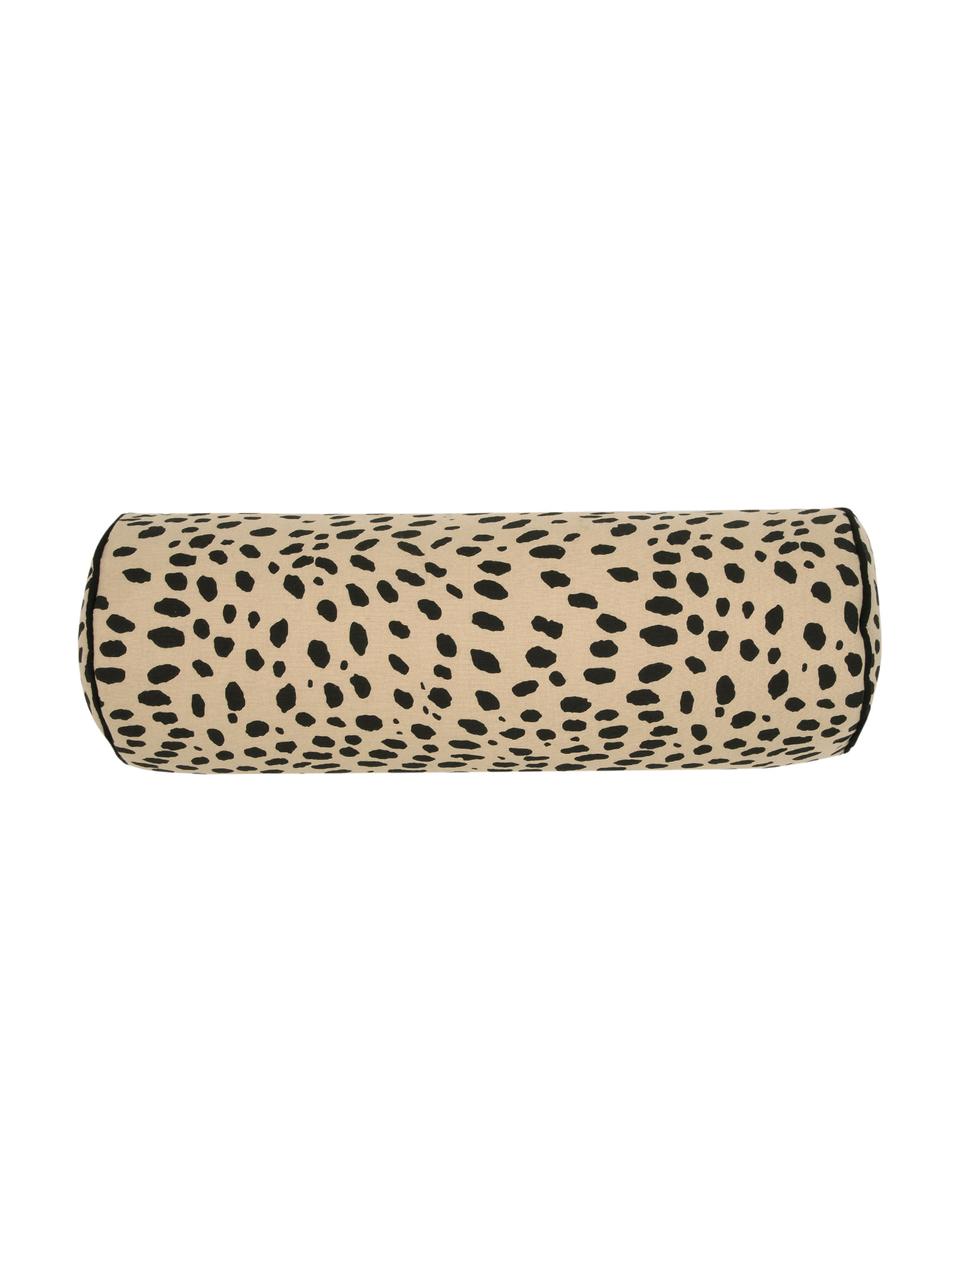 Rotollo per il collo Leopard, con imbottitura, 100% cotone, Rotolo: beige, nero Bordatura a filetto: nero, Ø 18 x Lung. 50 cm